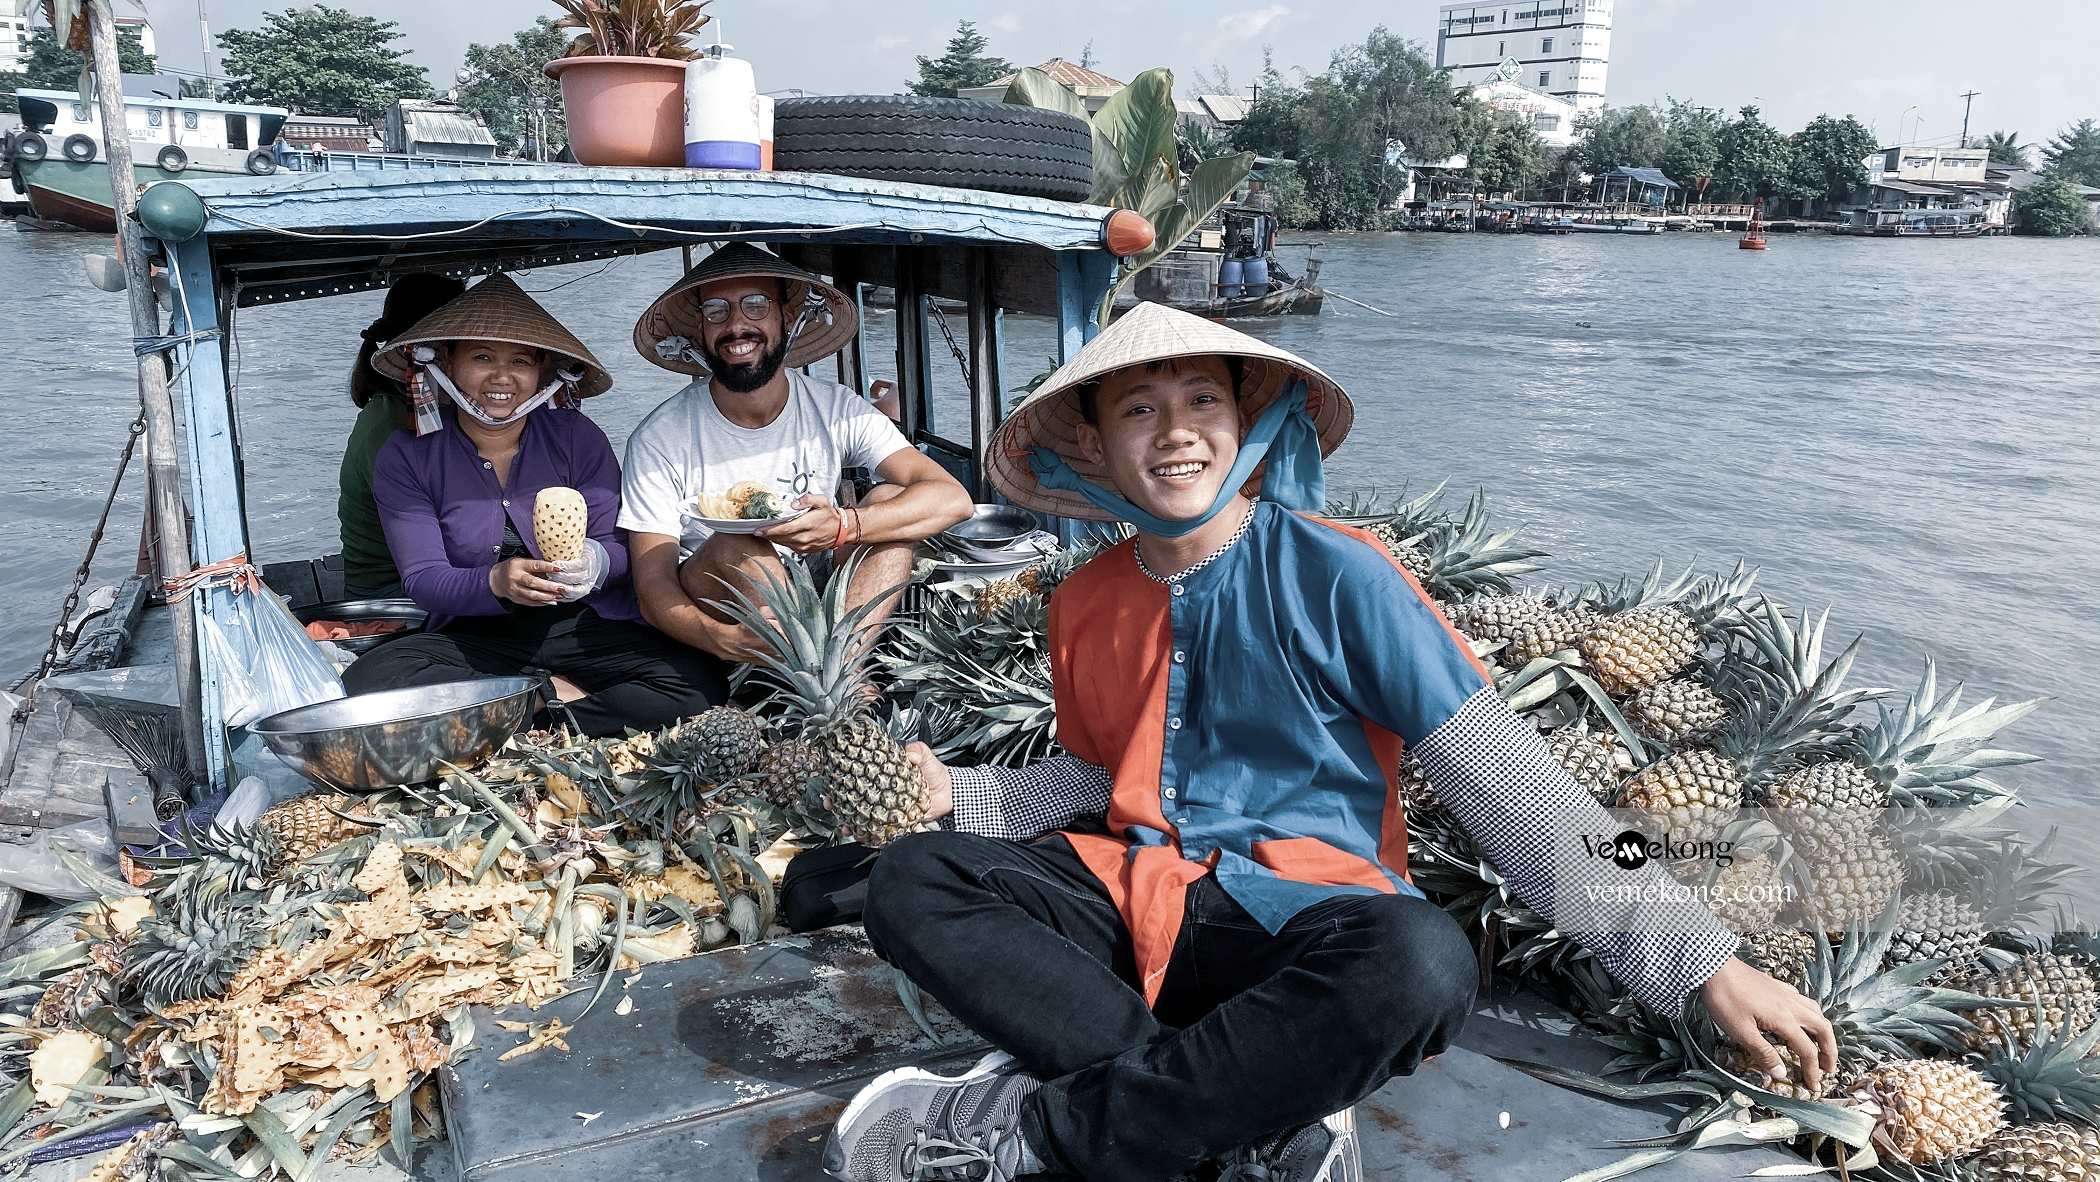 Découverte du marché flottant Cai Rang